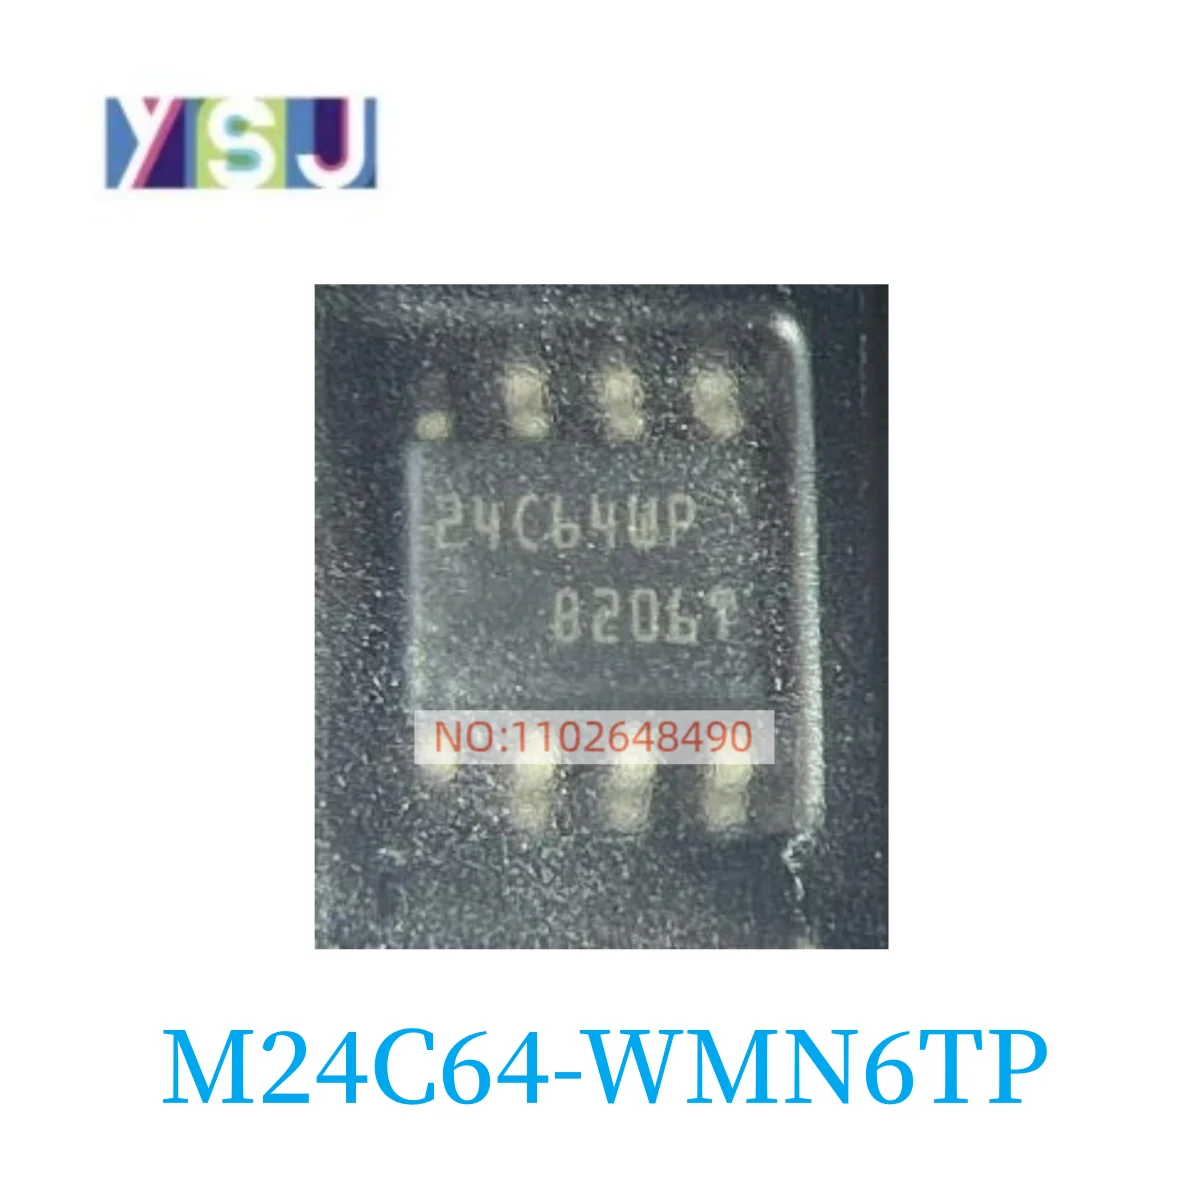 

M24C64-WMN6TP IC новые оригинальные Товары в наличии, если вам нужен другой IC, пожалуйста, проконсультируйтесь